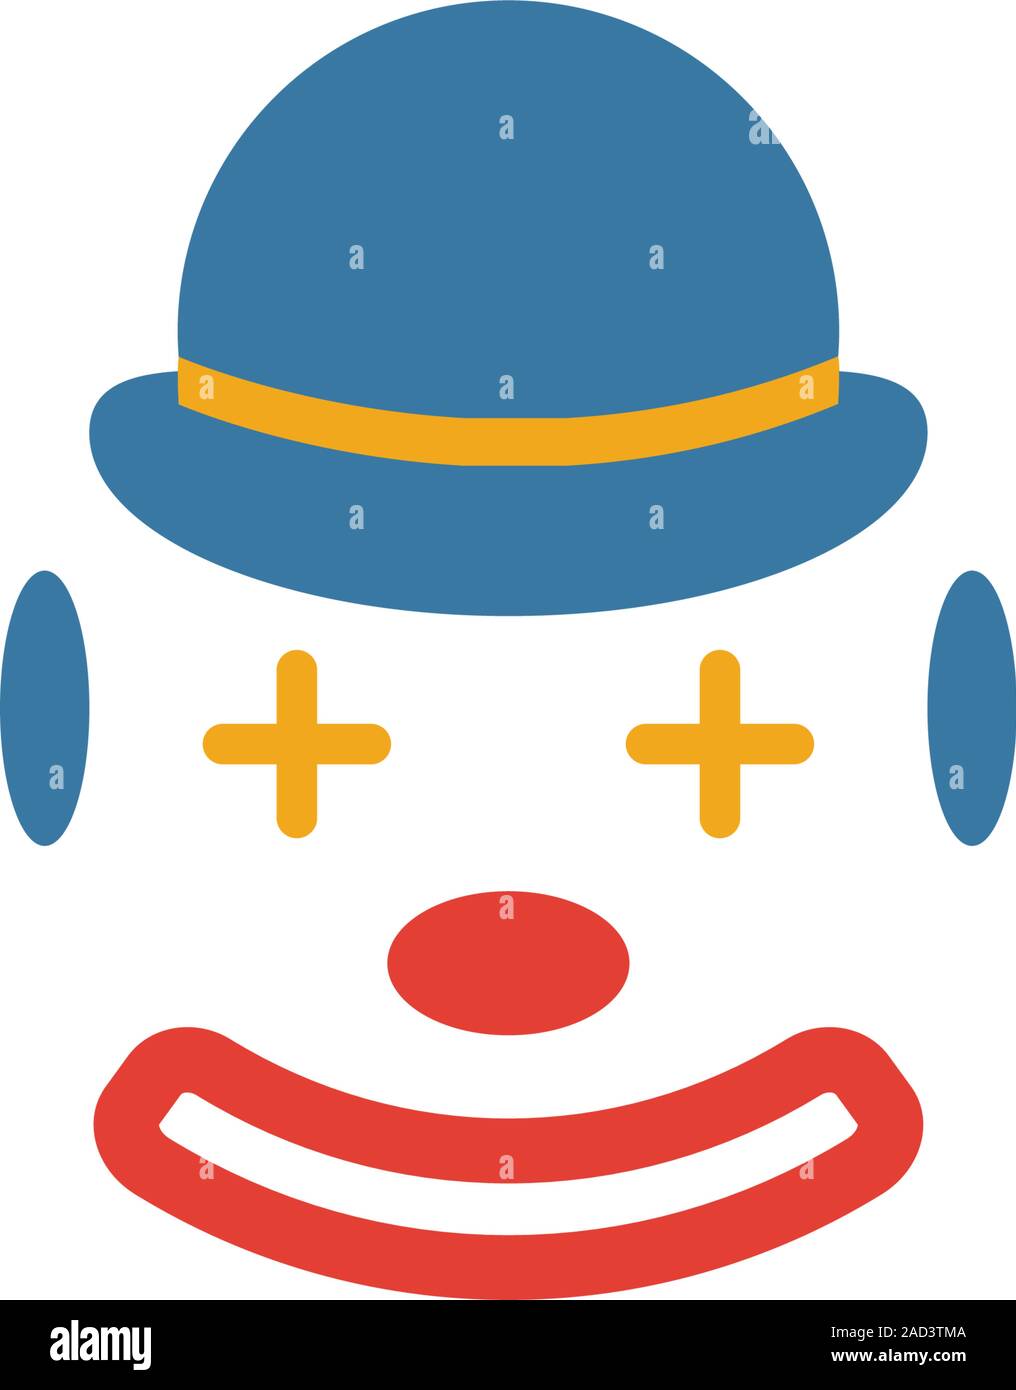 L'icône de clown. Élément simple de partie Icon icons collection. L'icône de création d'interface utilisateur Clown, ux, apps, logiciels et des infographies Illustration de Vecteur